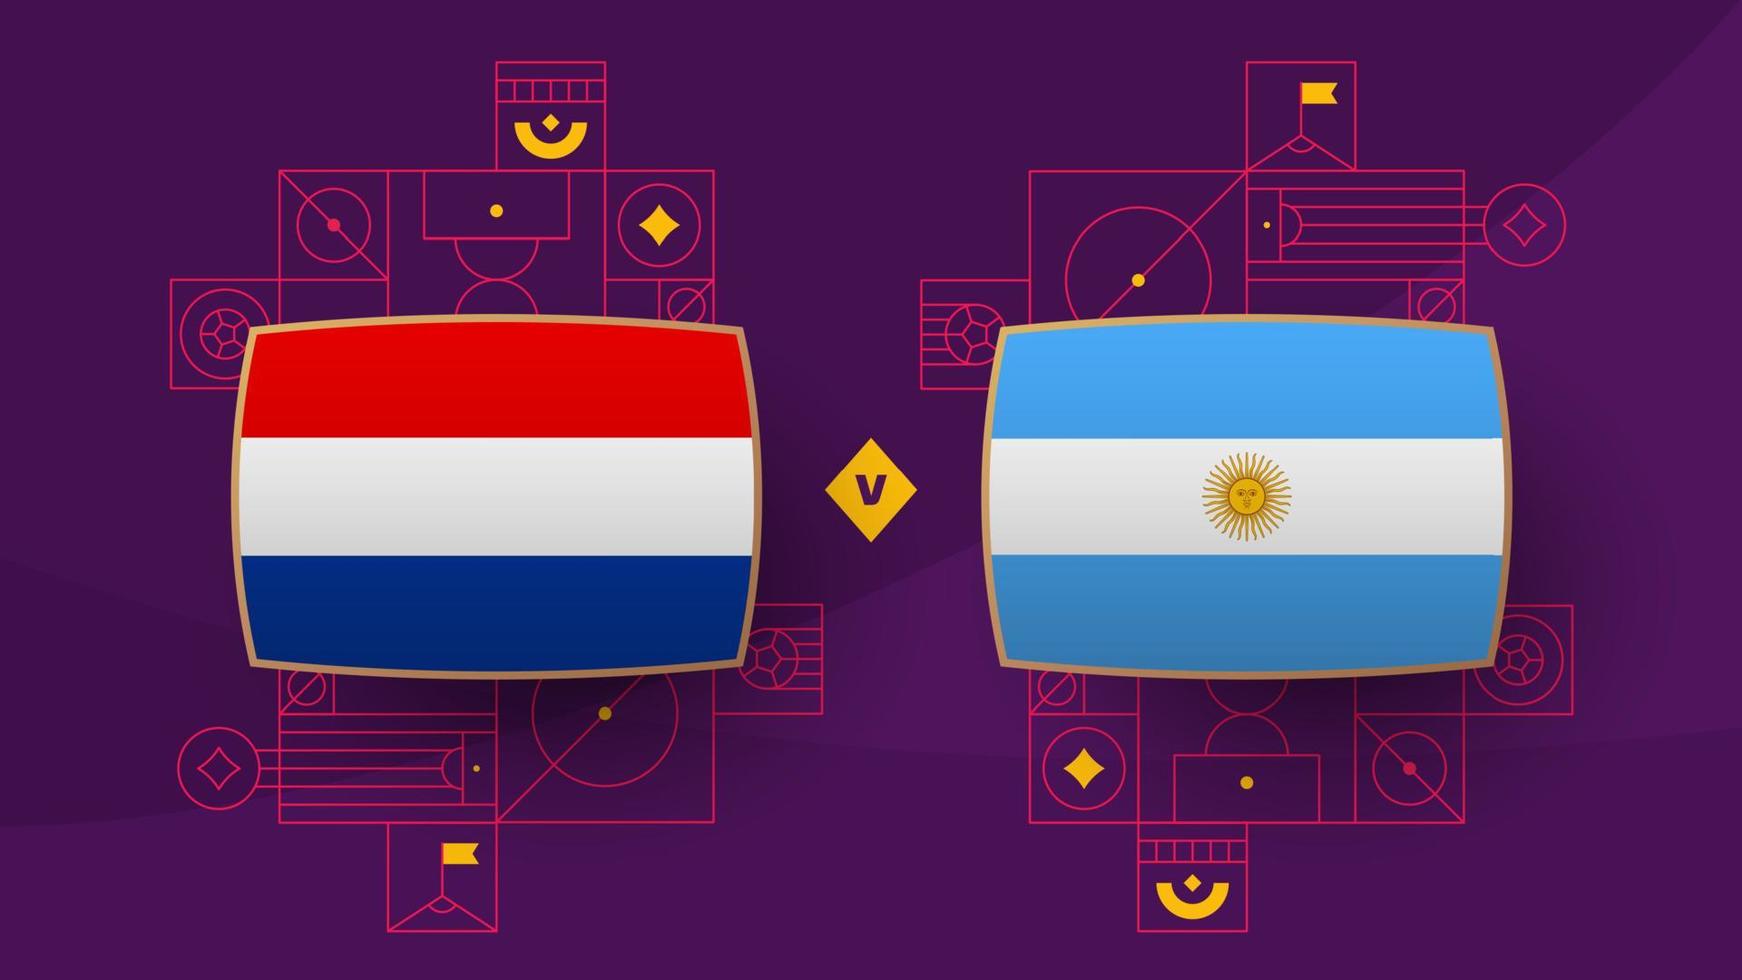 quartas de final do playoff da argentina holandesa partida de futebol 2022. partida do campeonato mundial de futebol de 2022 contra times de introdução ao fundo esportivo, pôster da competição do campeonato, vetor